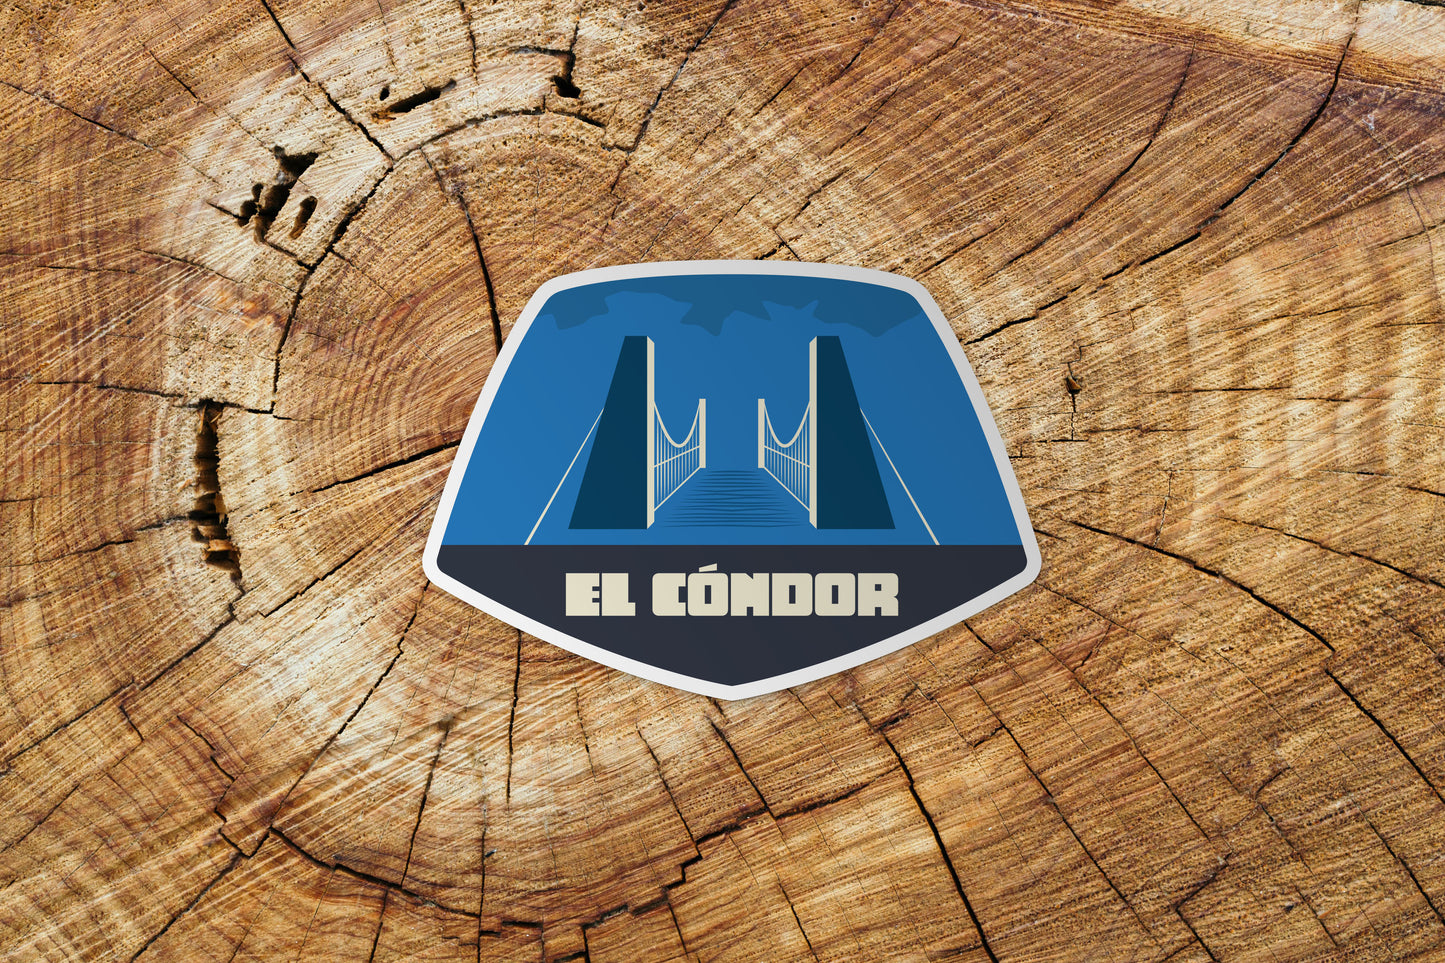 El Cóndor sticker